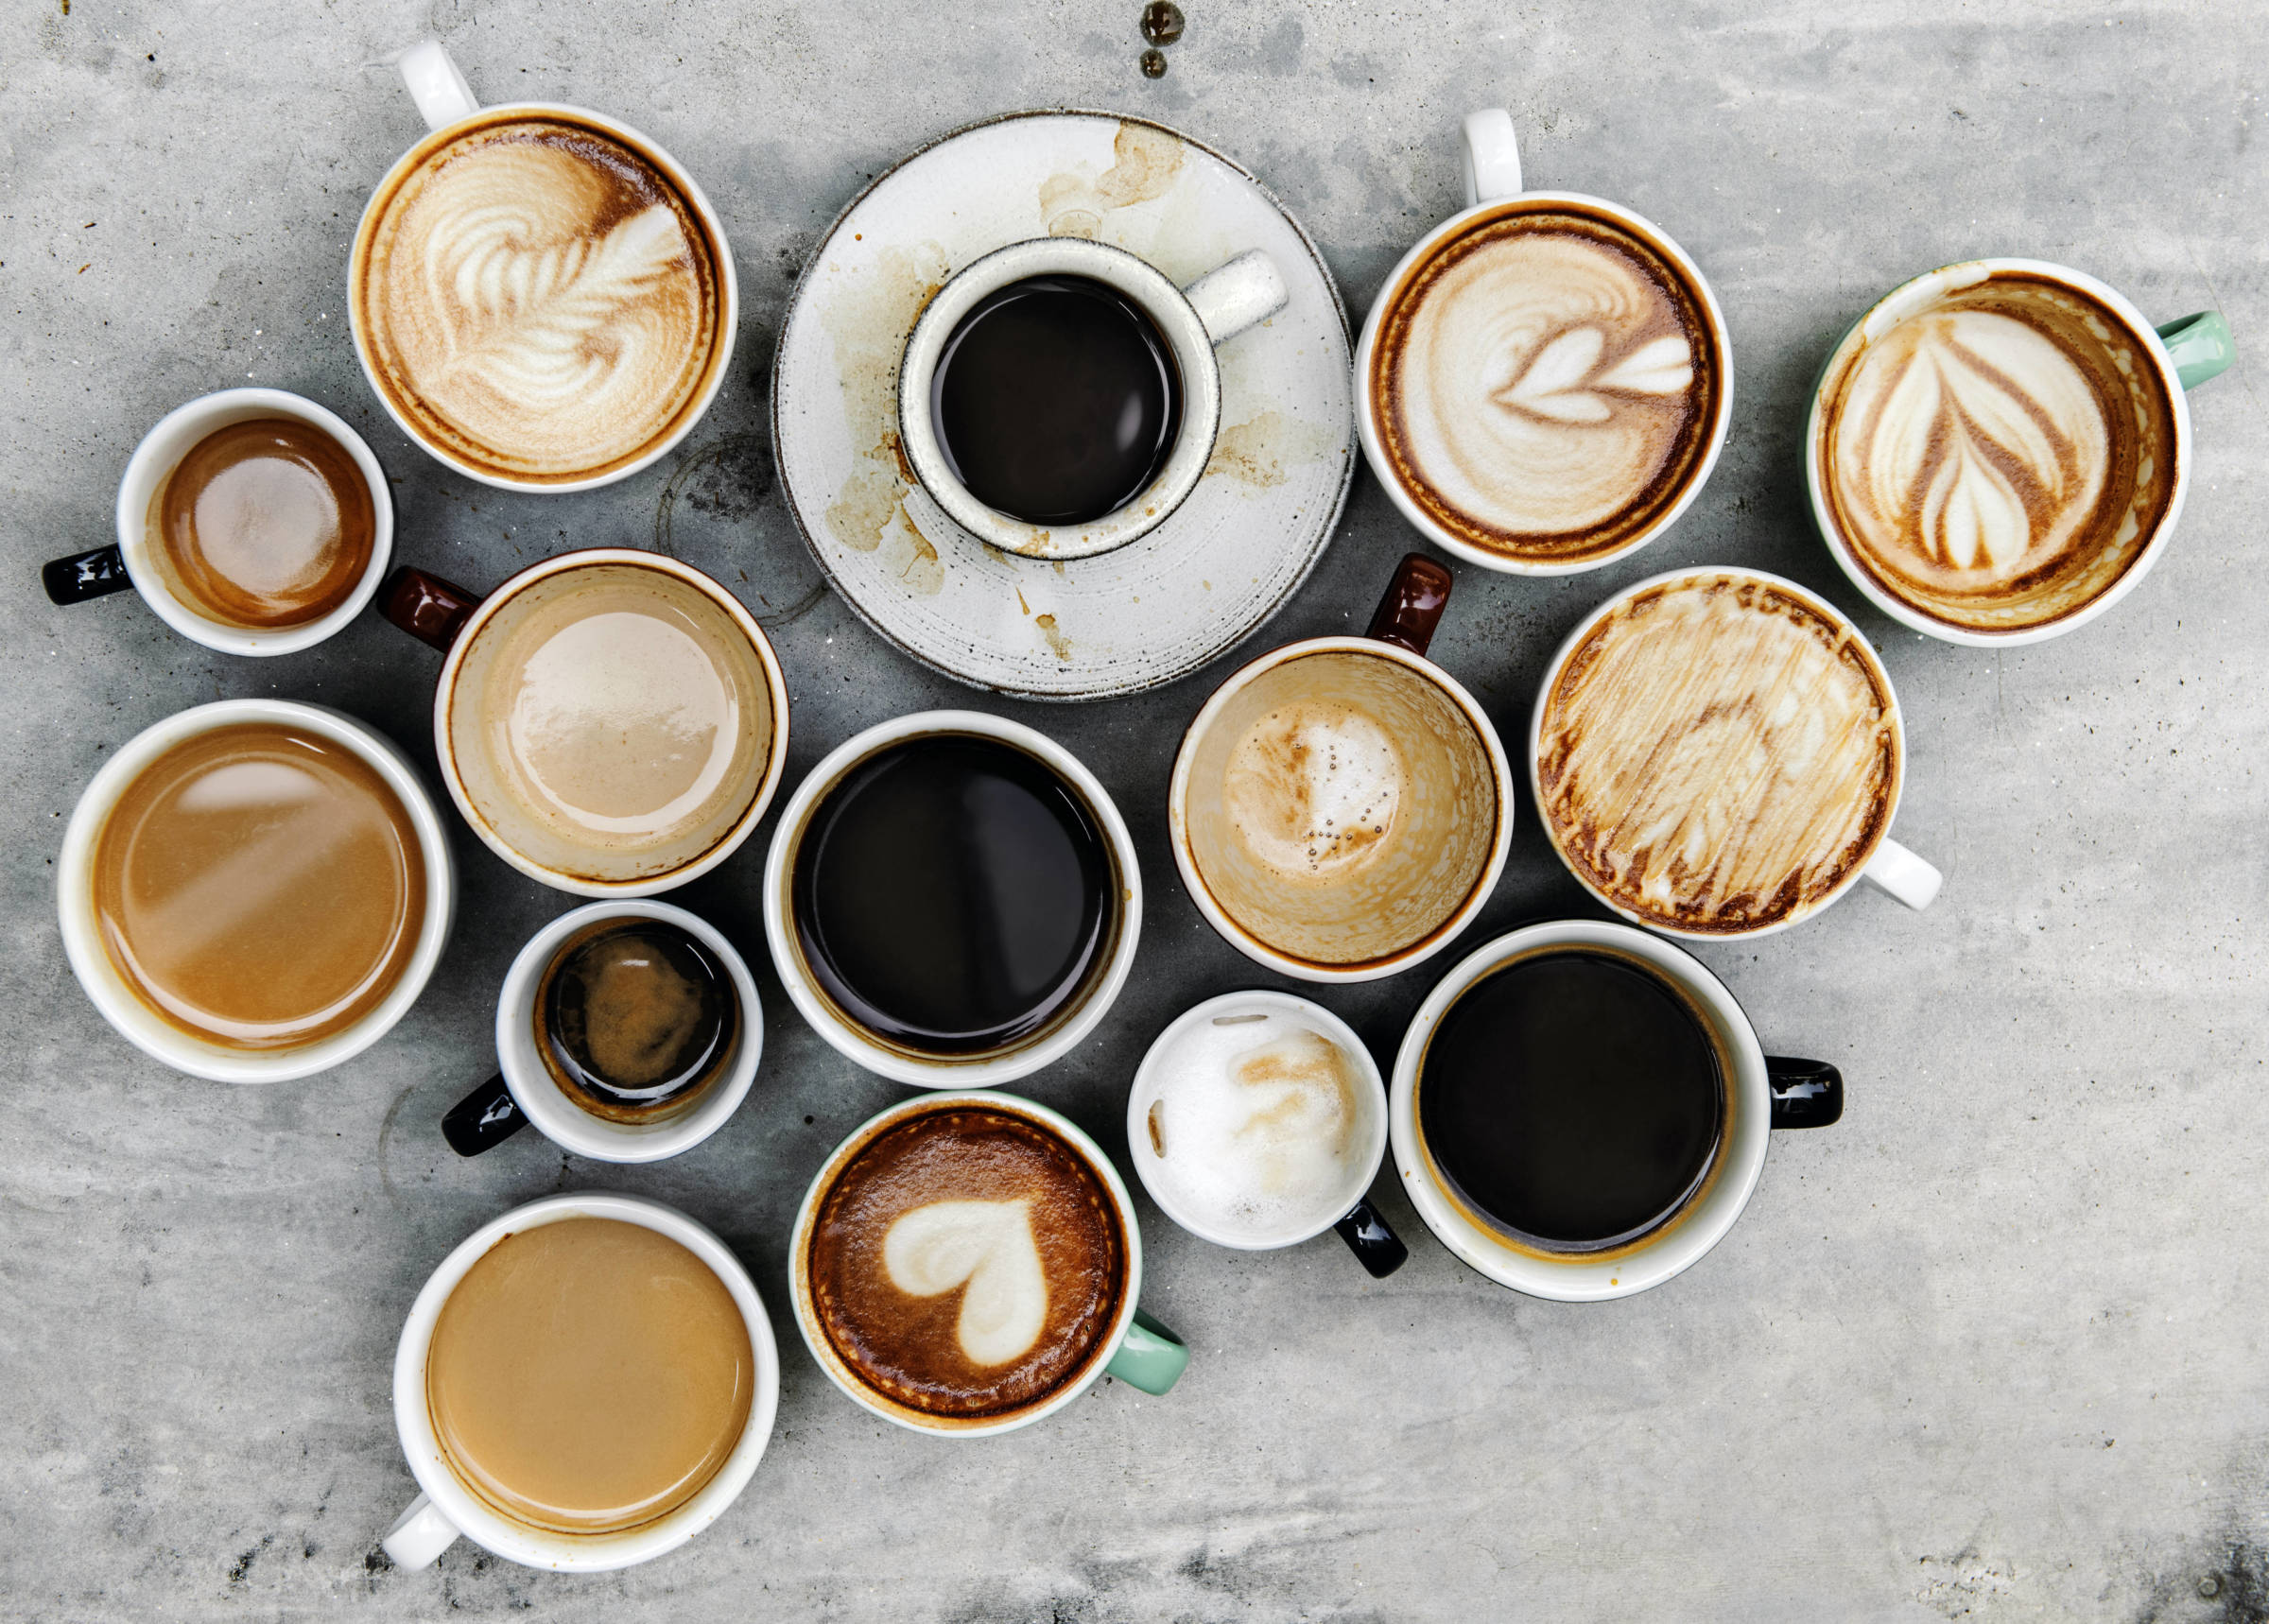 Erilaisia kahvikuppeja ylhäältäpäin kuvattuna: kahvia mustana, maidolla, lattena, espressoja. Kaikilla työpaikoilla juodaan kahvia, mutta meillä jokaisella on omanlainen kahvimakumme, ja kuppien koko ja tyylikin usein vaihtelee. Kuppikokoelma muodostaa ylös- ja eteenpäin osoittavan nuolikuvion, mikä symboloi toiminnan kehittämistä.